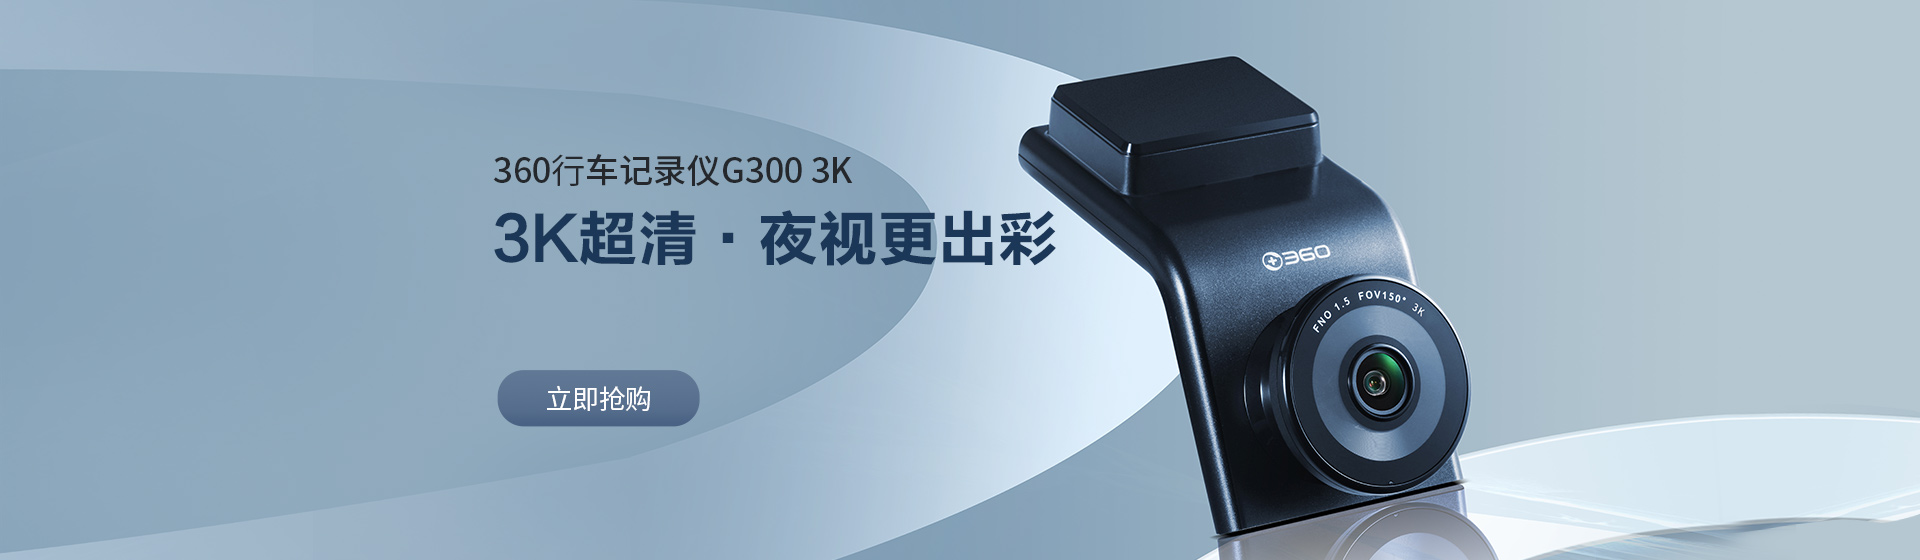 360行车记录仪G300 3K